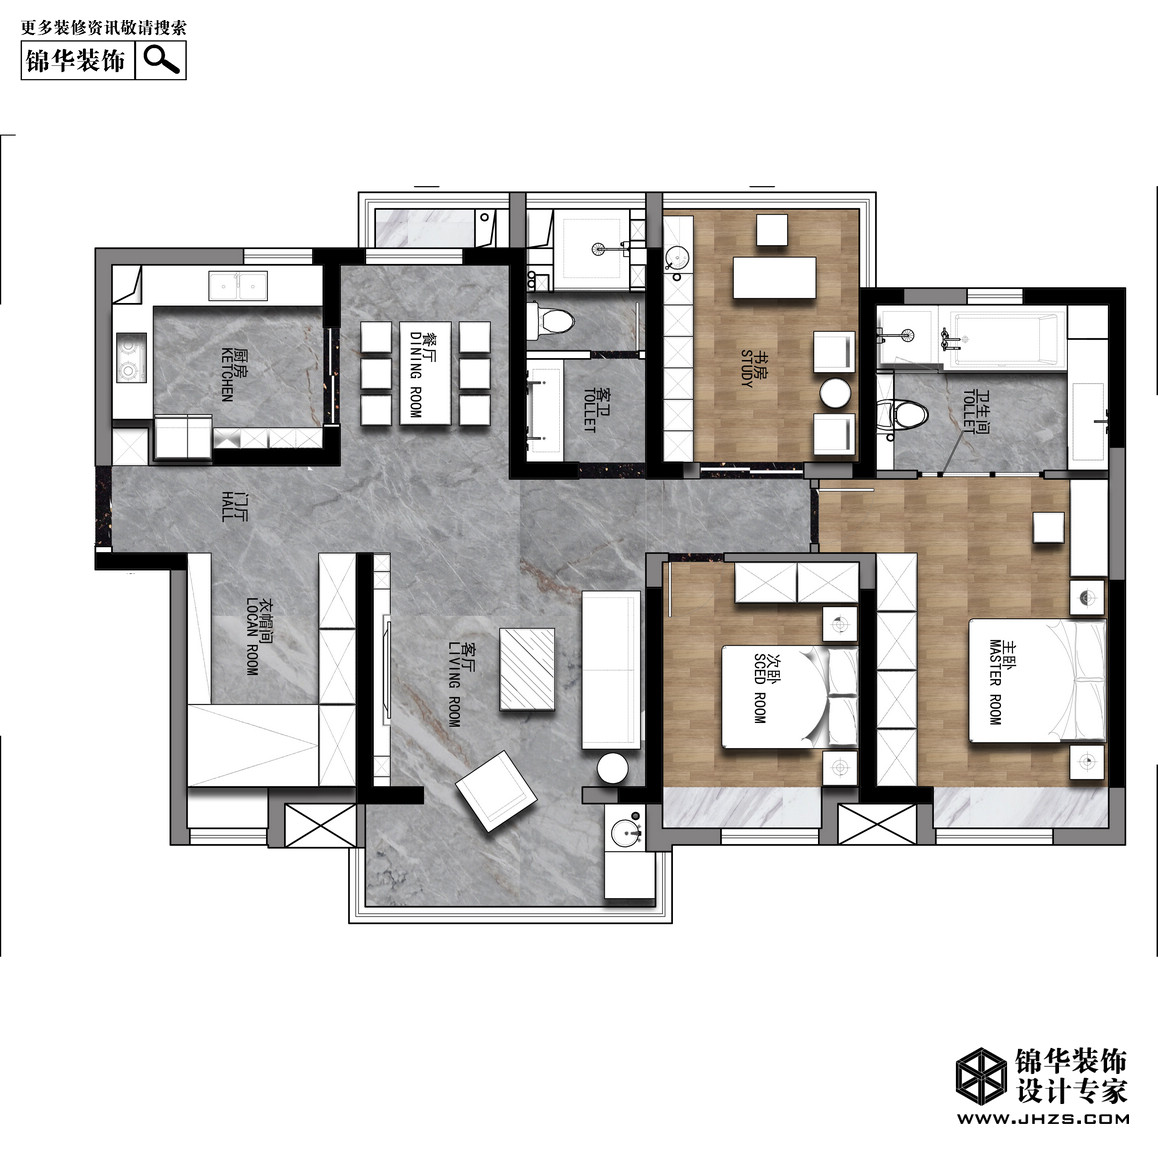 现代简约-海赋尚城-三室两厅-142平米装修-三室两厅-现代简约